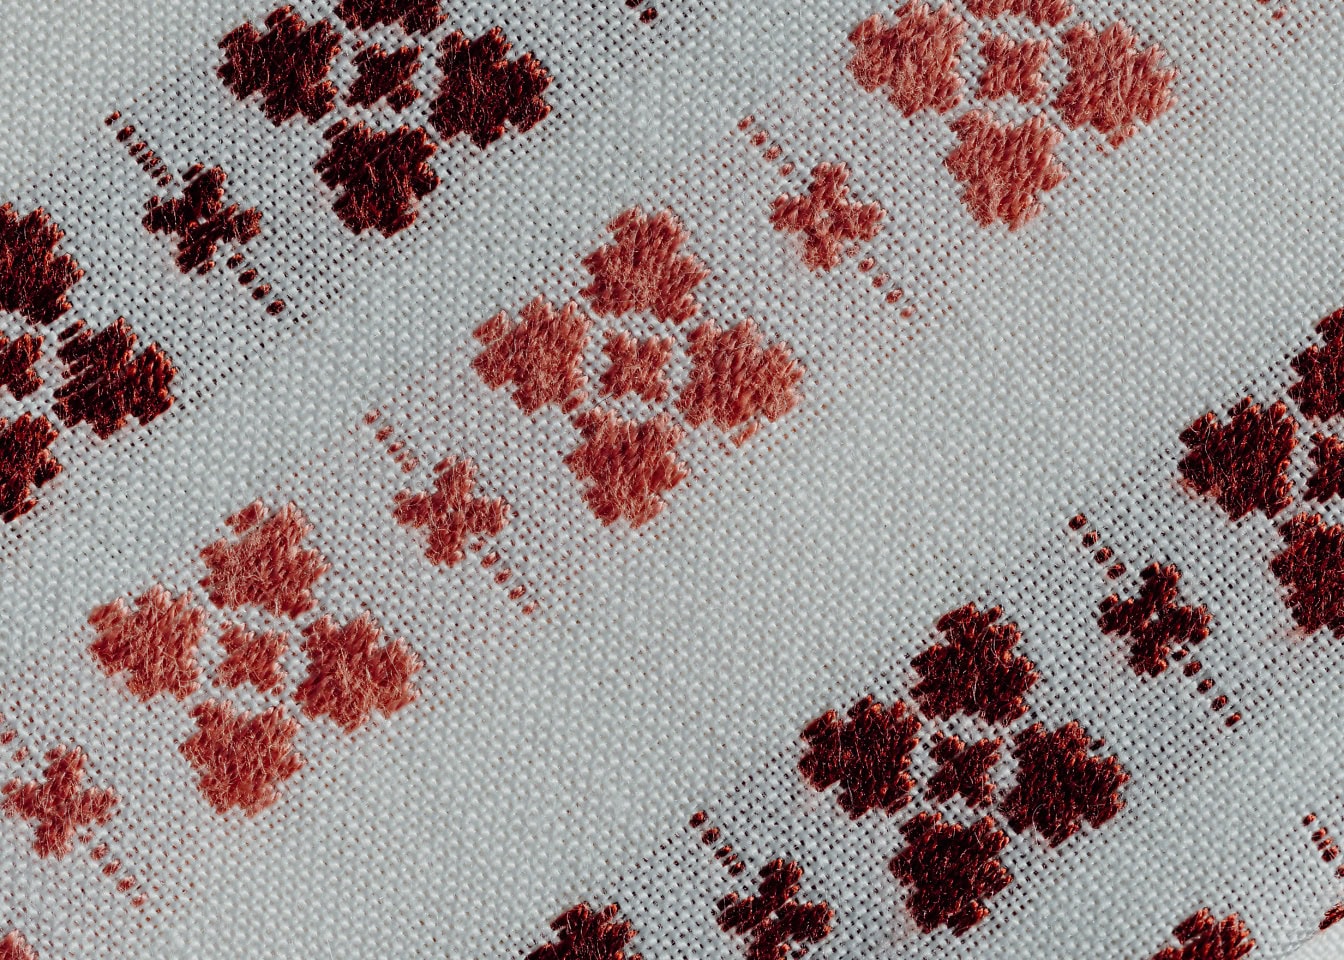 Primer plano de una tela de algodón blanco con motivos tradicionales de color marrón anaranjado